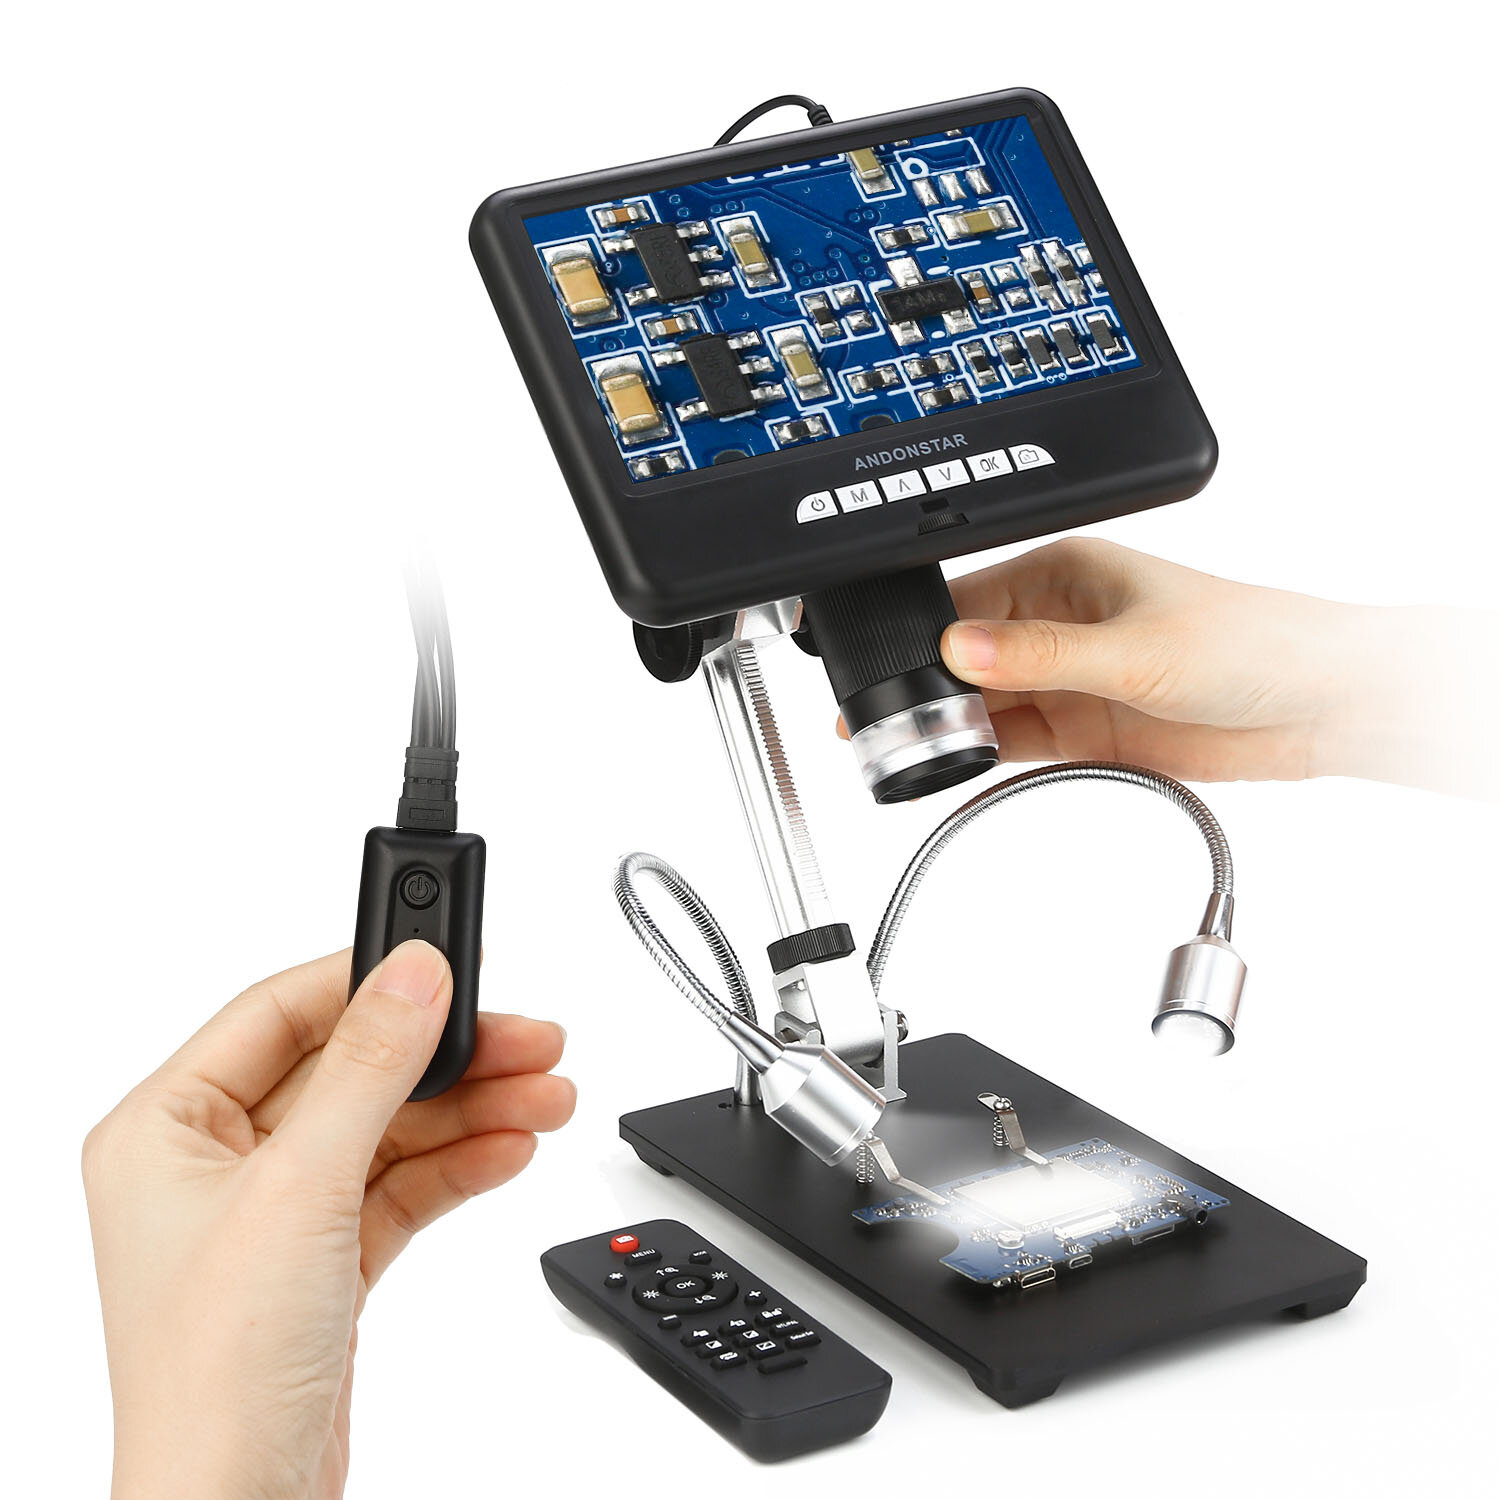 

Andonstar AD207 7-дюймовый цифровой 3D-микроскоп Пайка Инструмент для ремонта телефонов / печатных плат / SMD с функцией